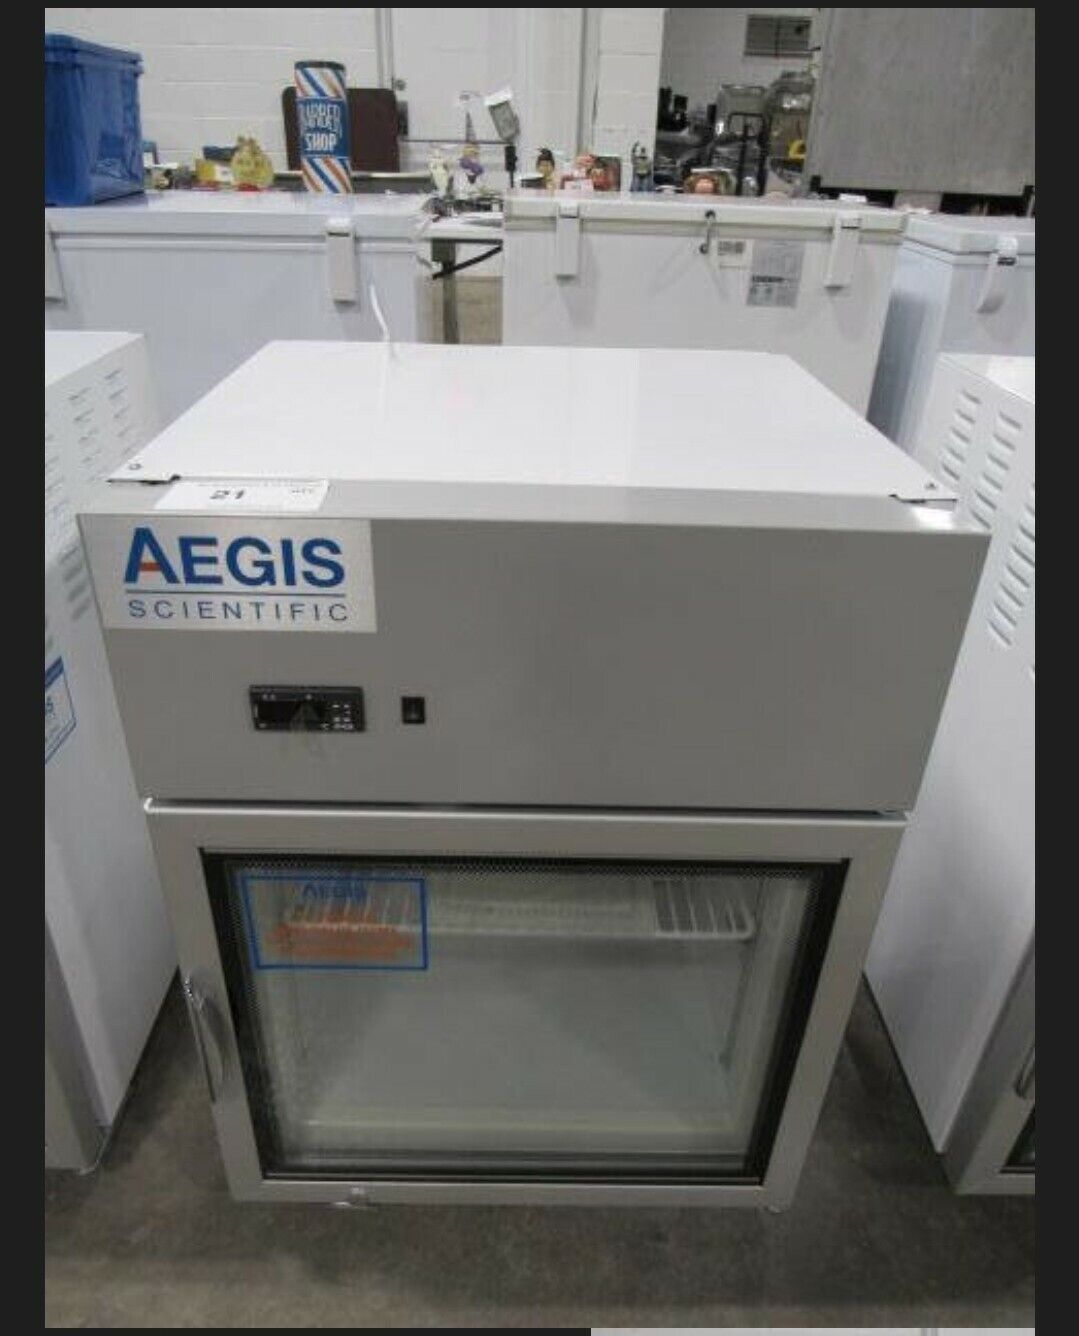 Mckesson Aegis Model 2-ucfa-2.0 Countertop Scientific Freezer 2 Available!